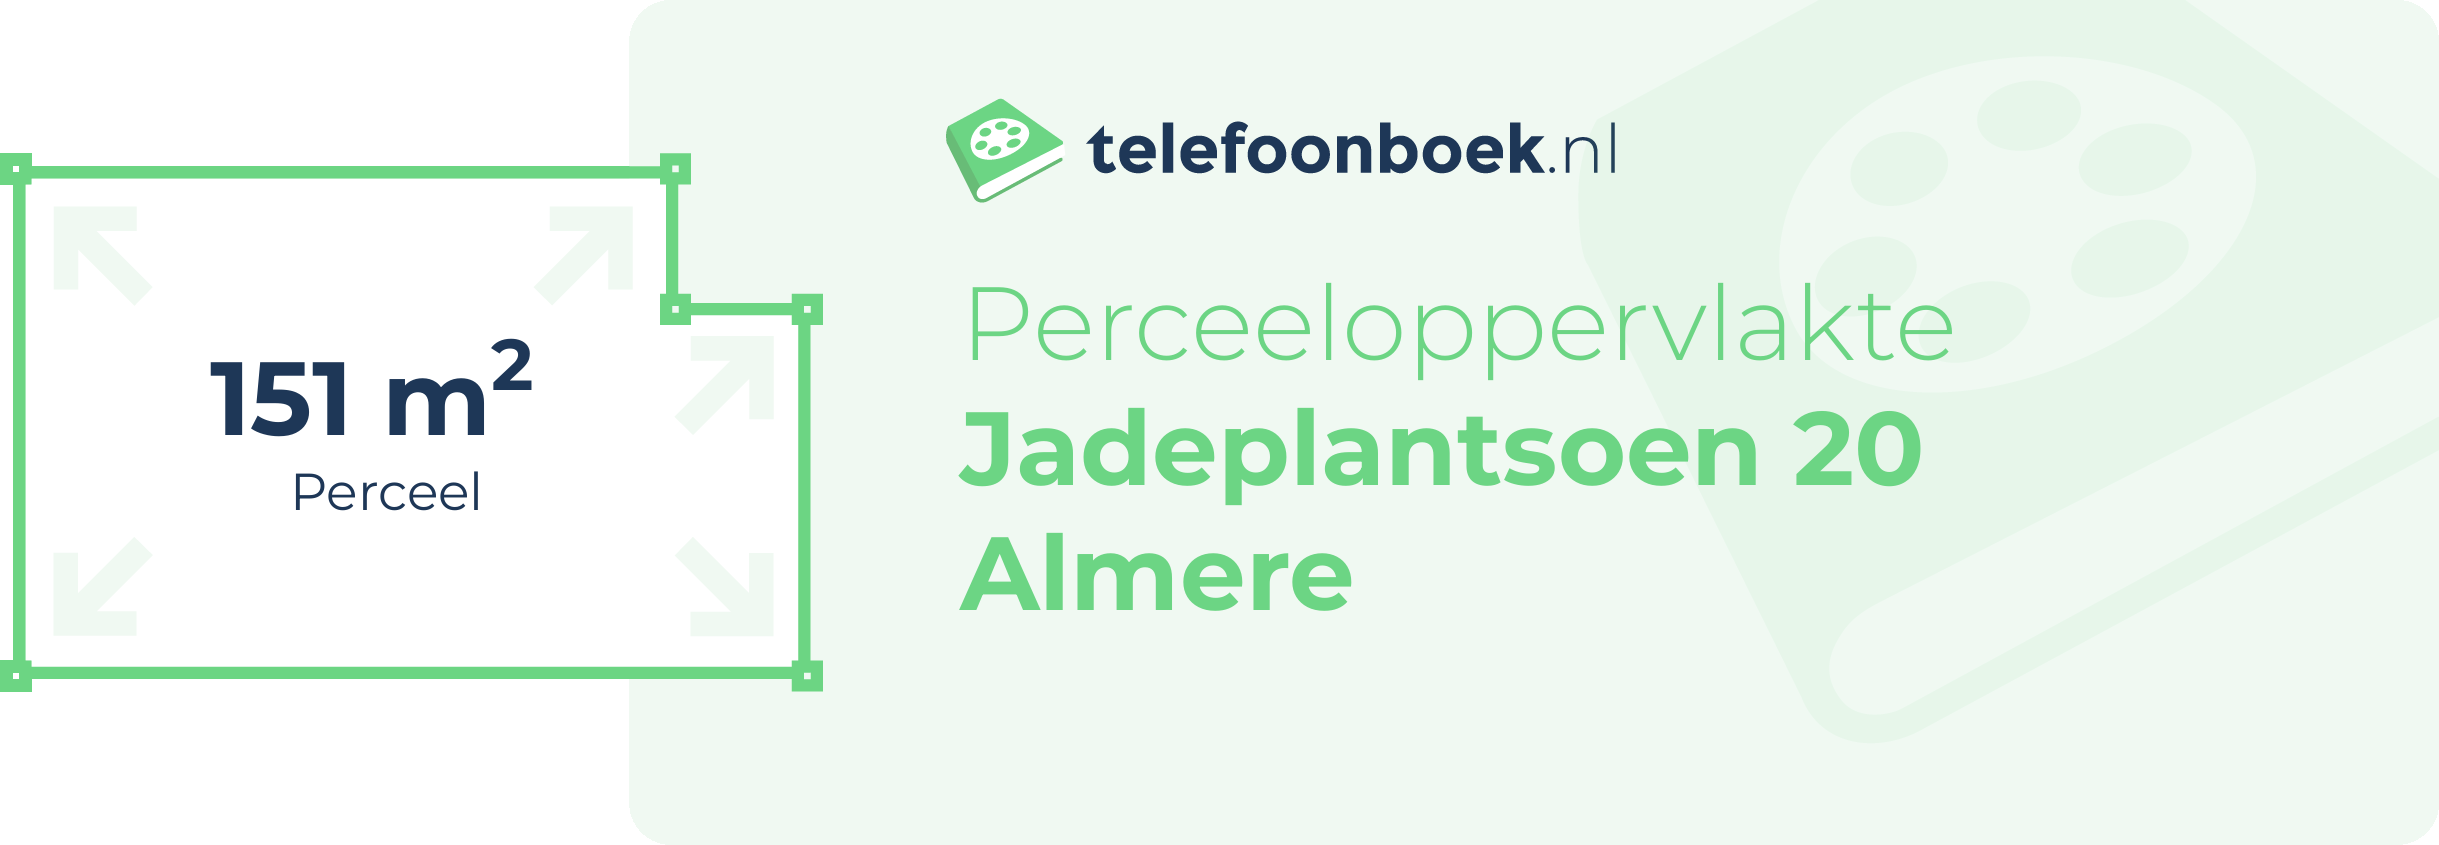 Perceeloppervlakte Jadeplantsoen 20 Almere